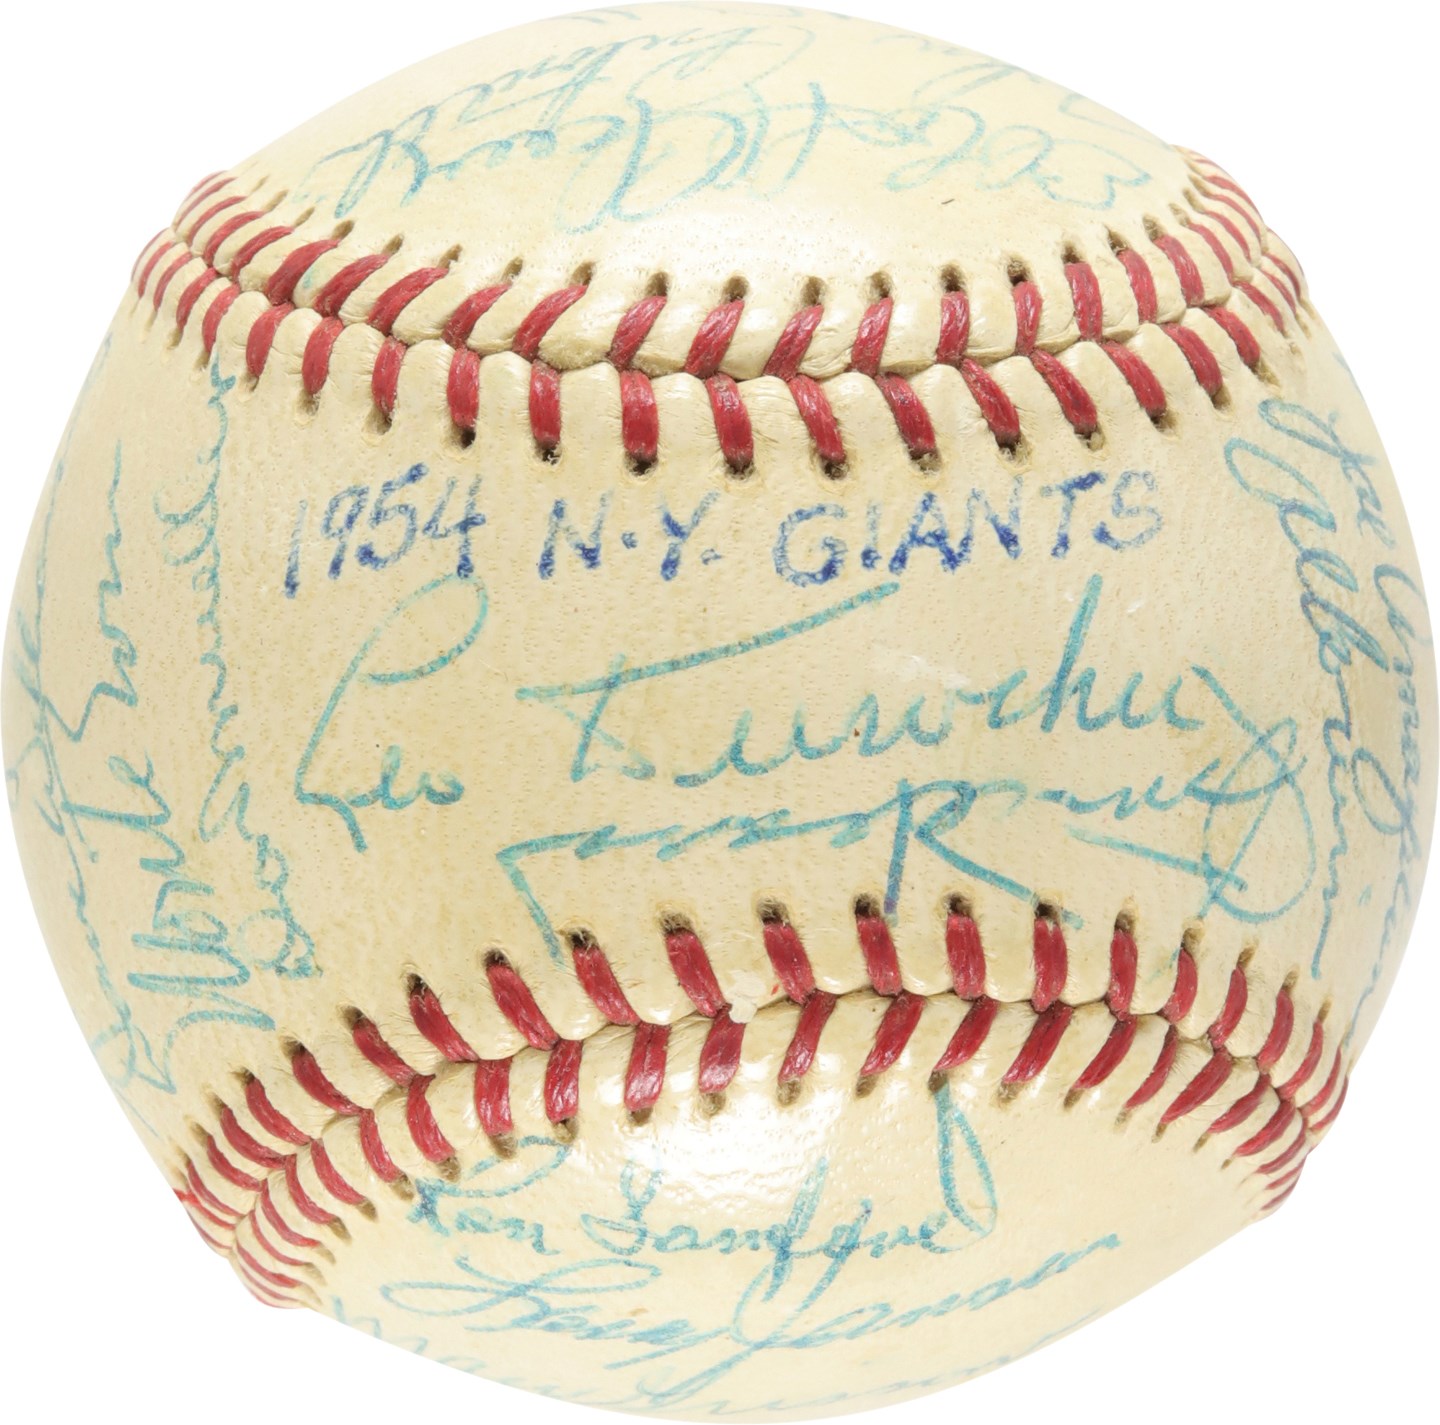 - Strong 1954 World Champion New York Giants Team-Signed Baseball (PSA)